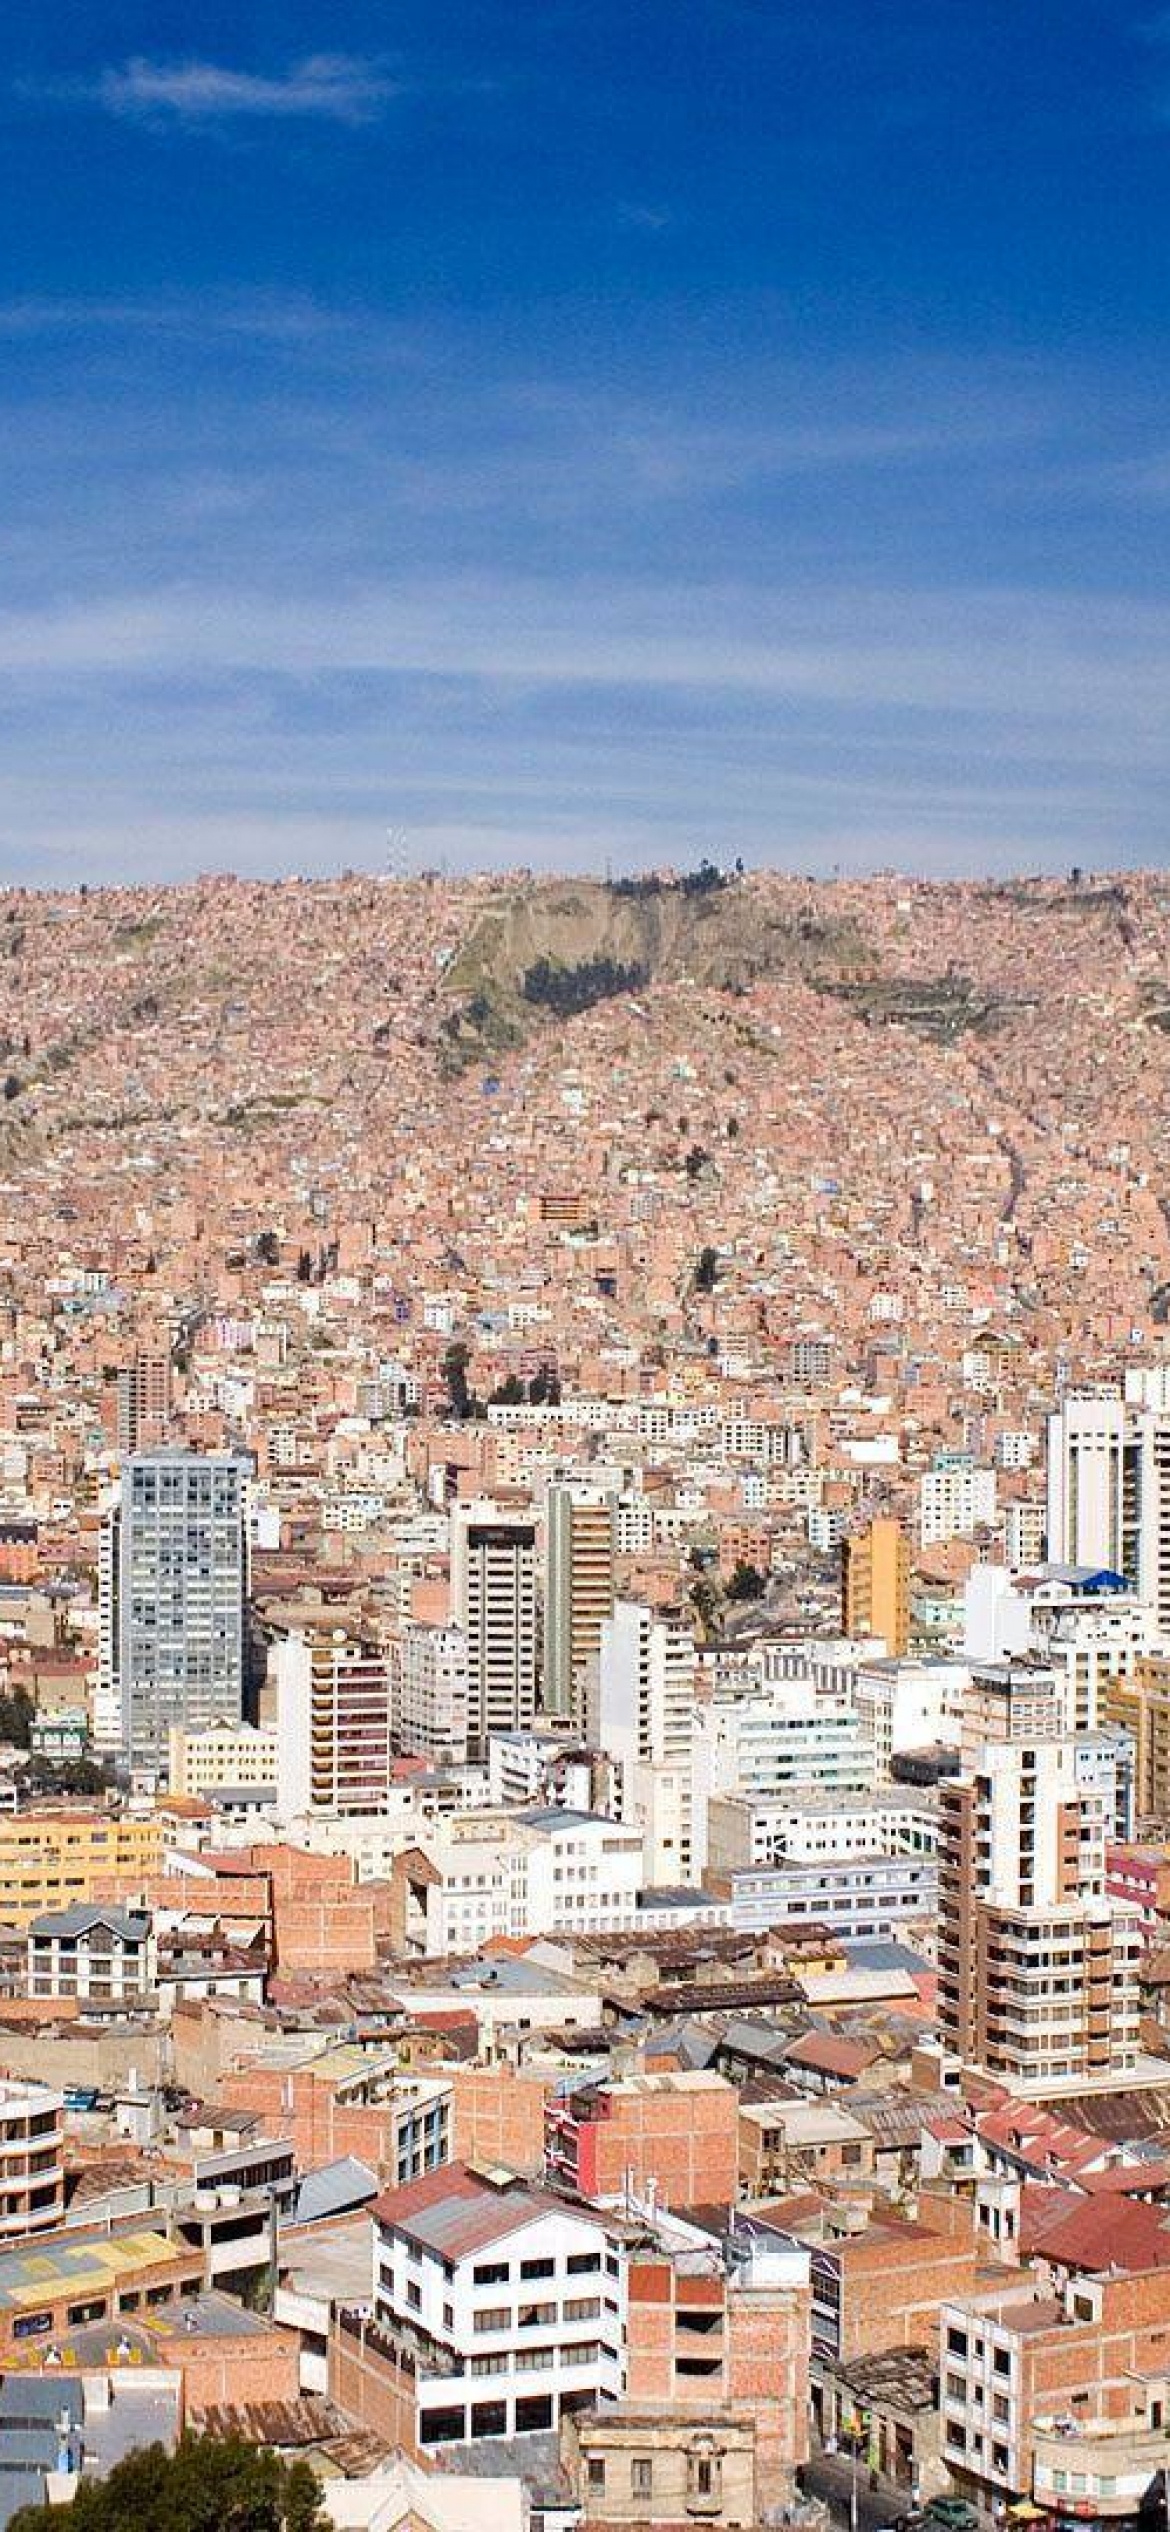 La Paz, Bolivian desert, Free HD wallpapers, Vibrant colors, 1170x2540 HD Handy